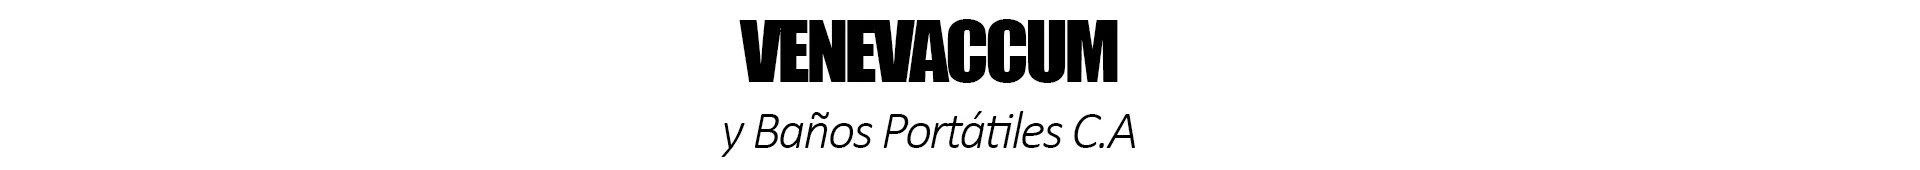 Imagen 1 del perfil de Venevaccum y Baños Portatiles